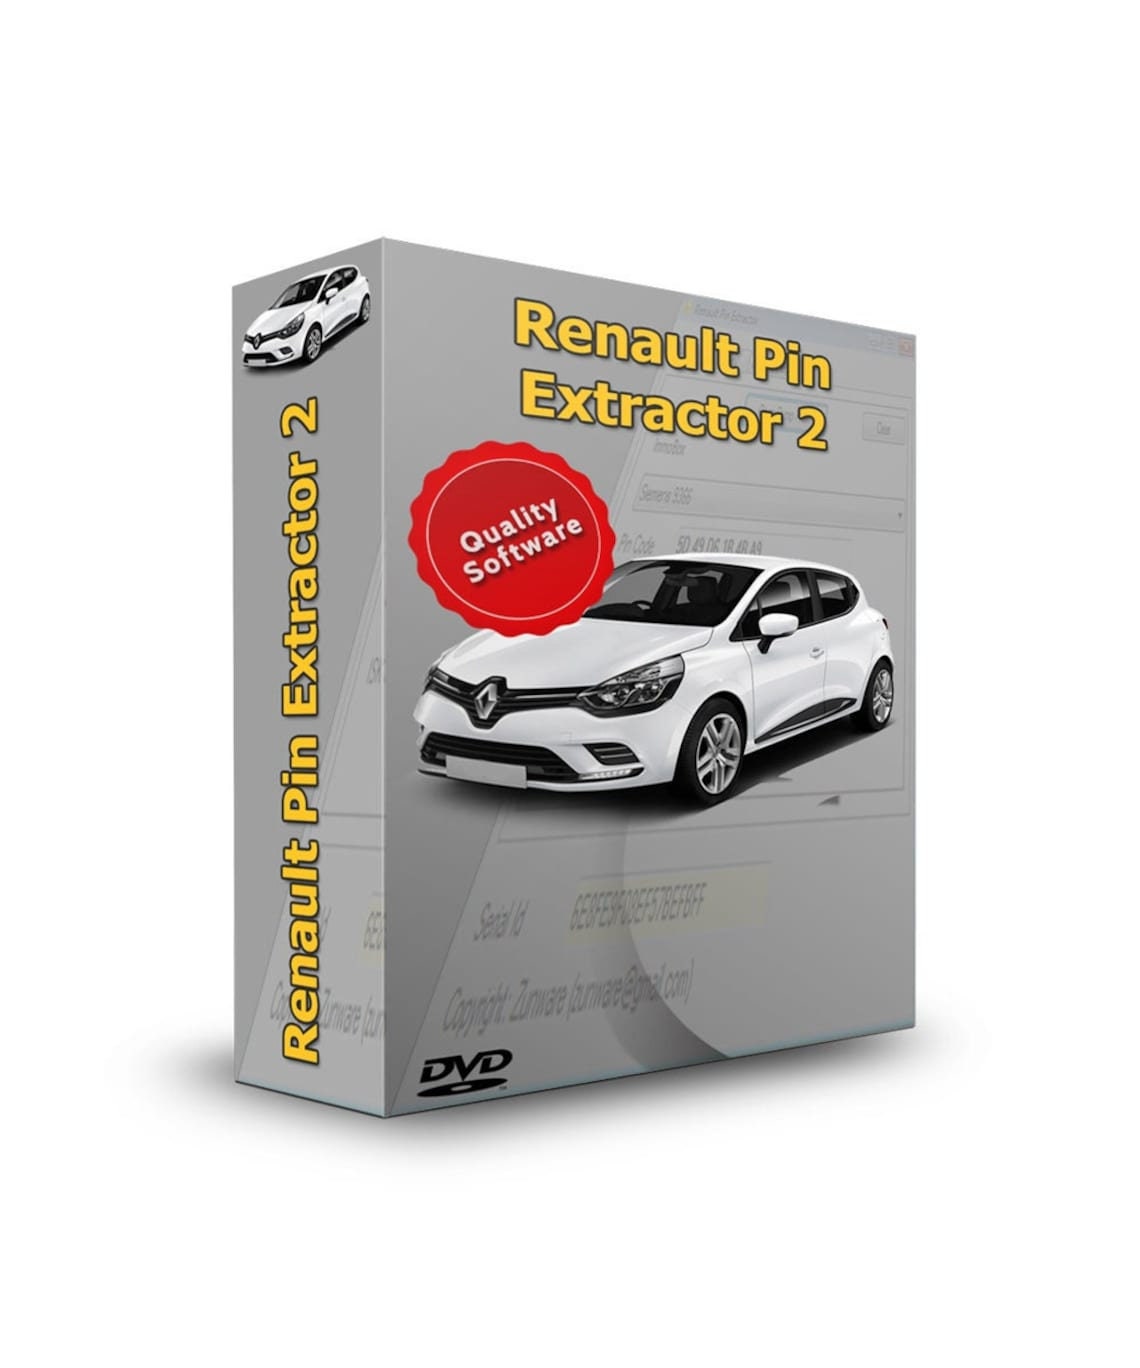 Große Rauten Seitenstreifen Aufkleber für RENAULT CLIO 3 RS